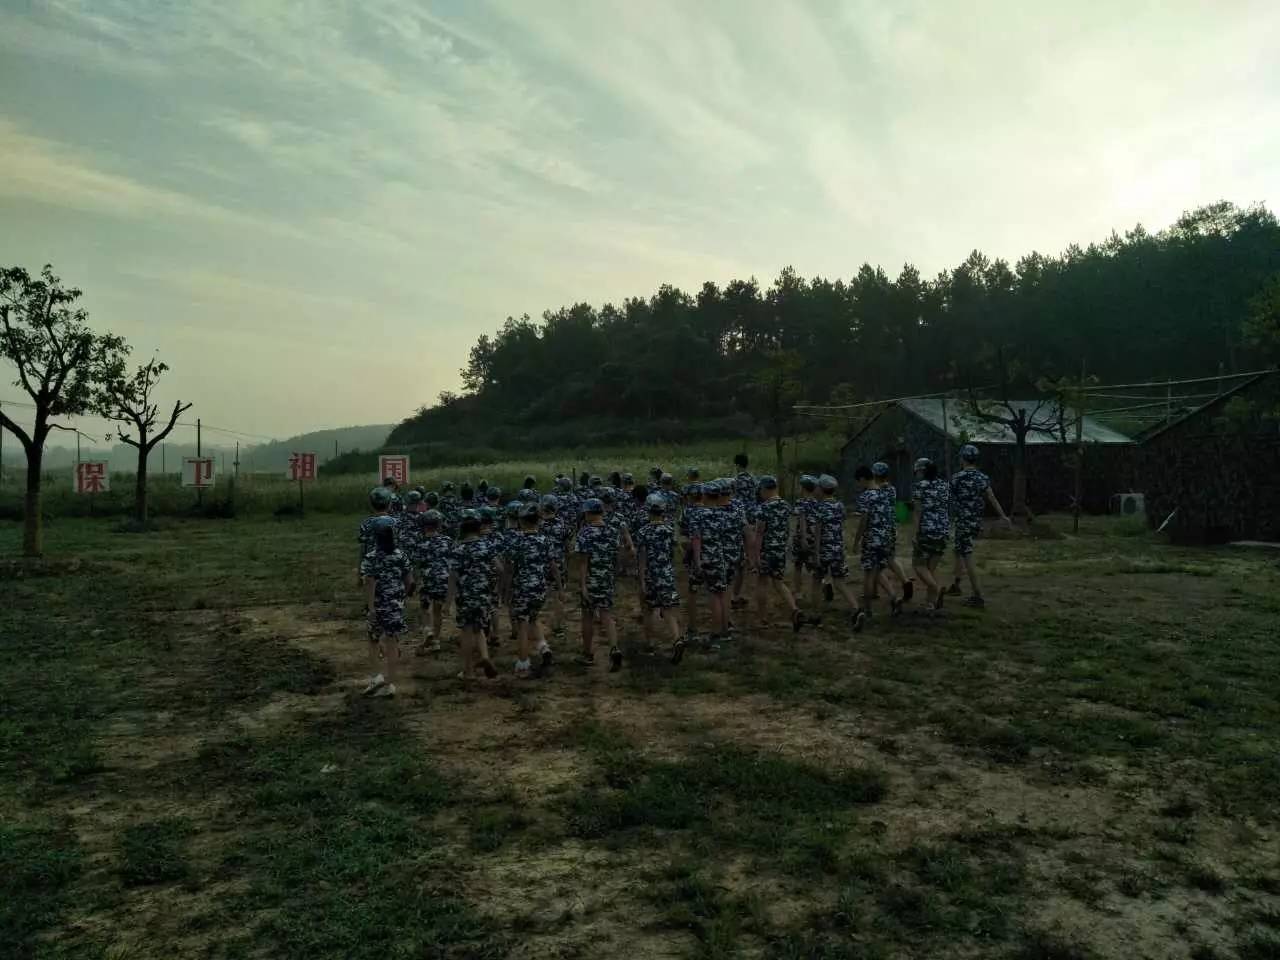 今天是滁州军事夏令营最后一天,短短的四天营地生活,我们可以看到